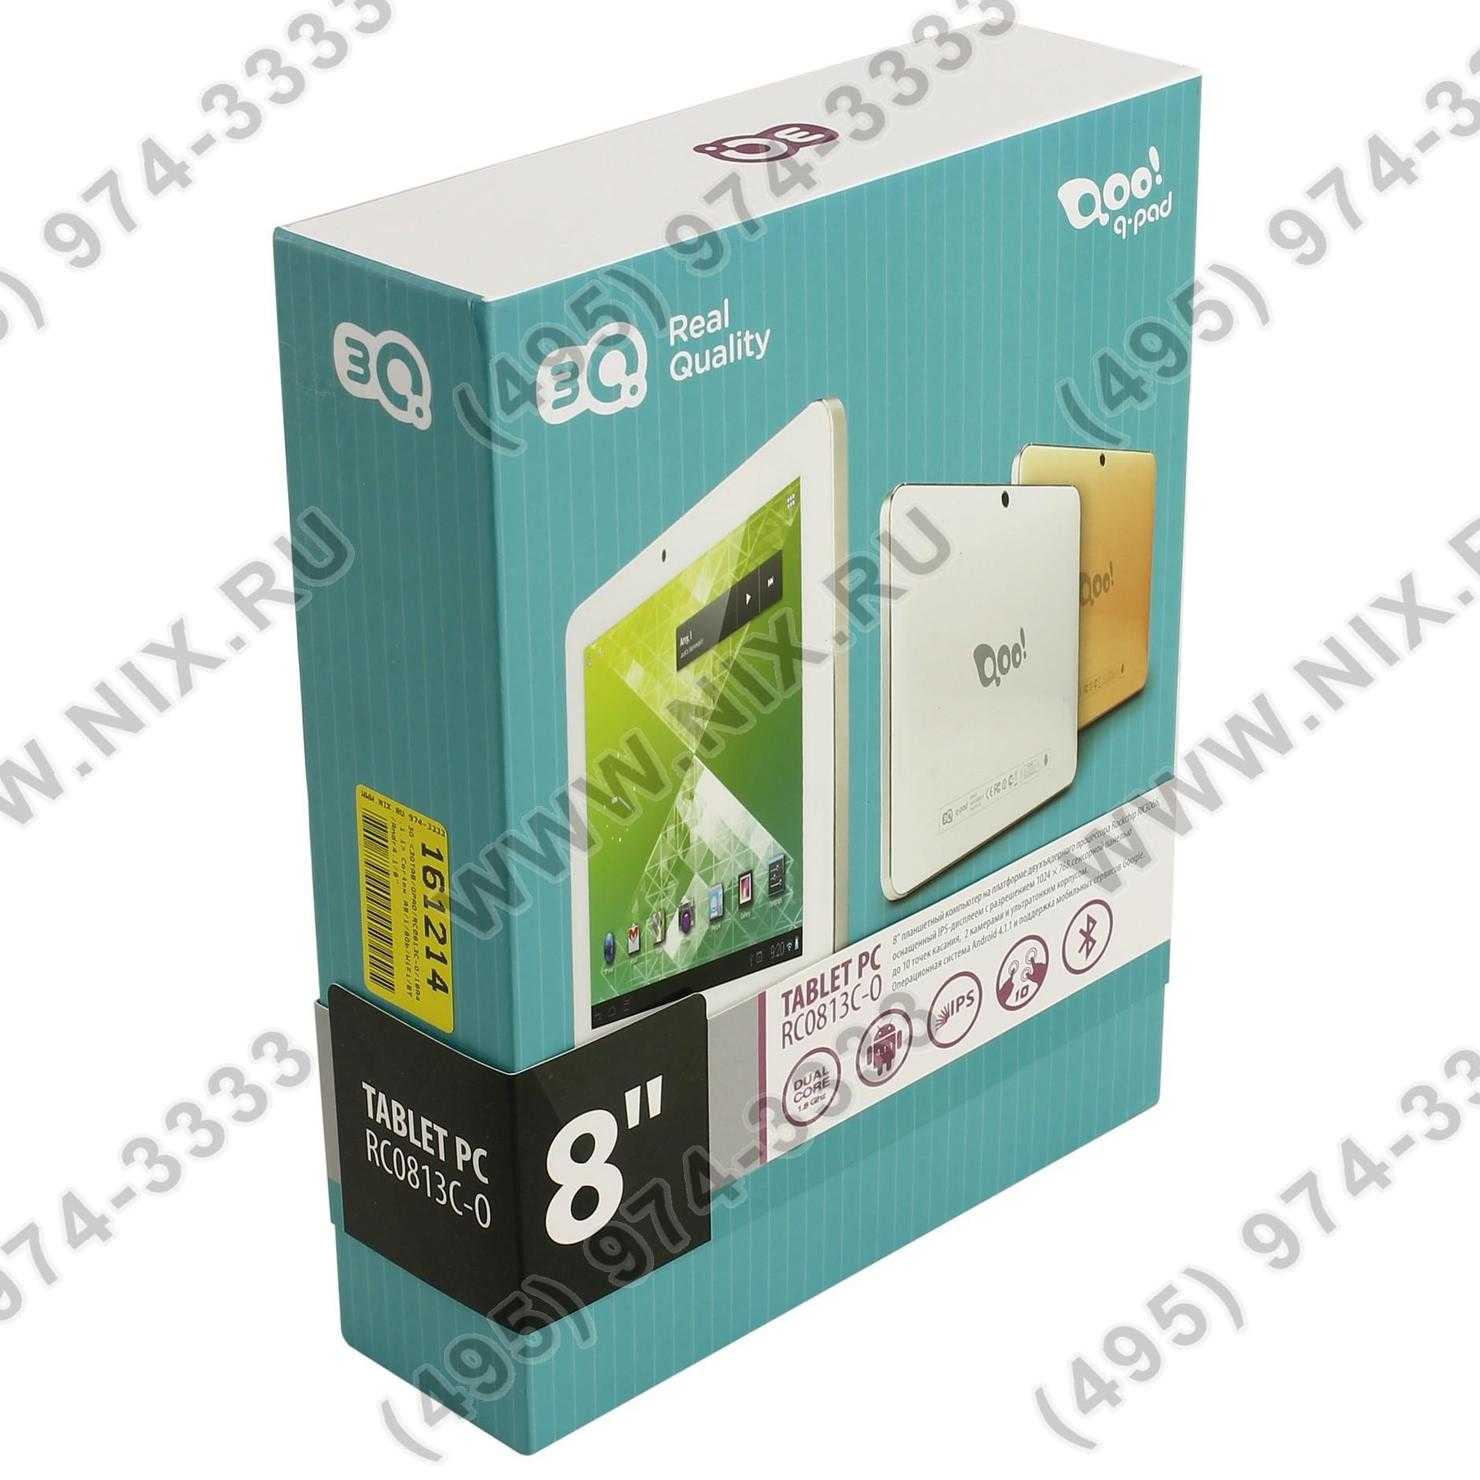 Планшет 3q qpad rc0738c 8 гб wifi черный — купить, цена и характеристики, отзывы